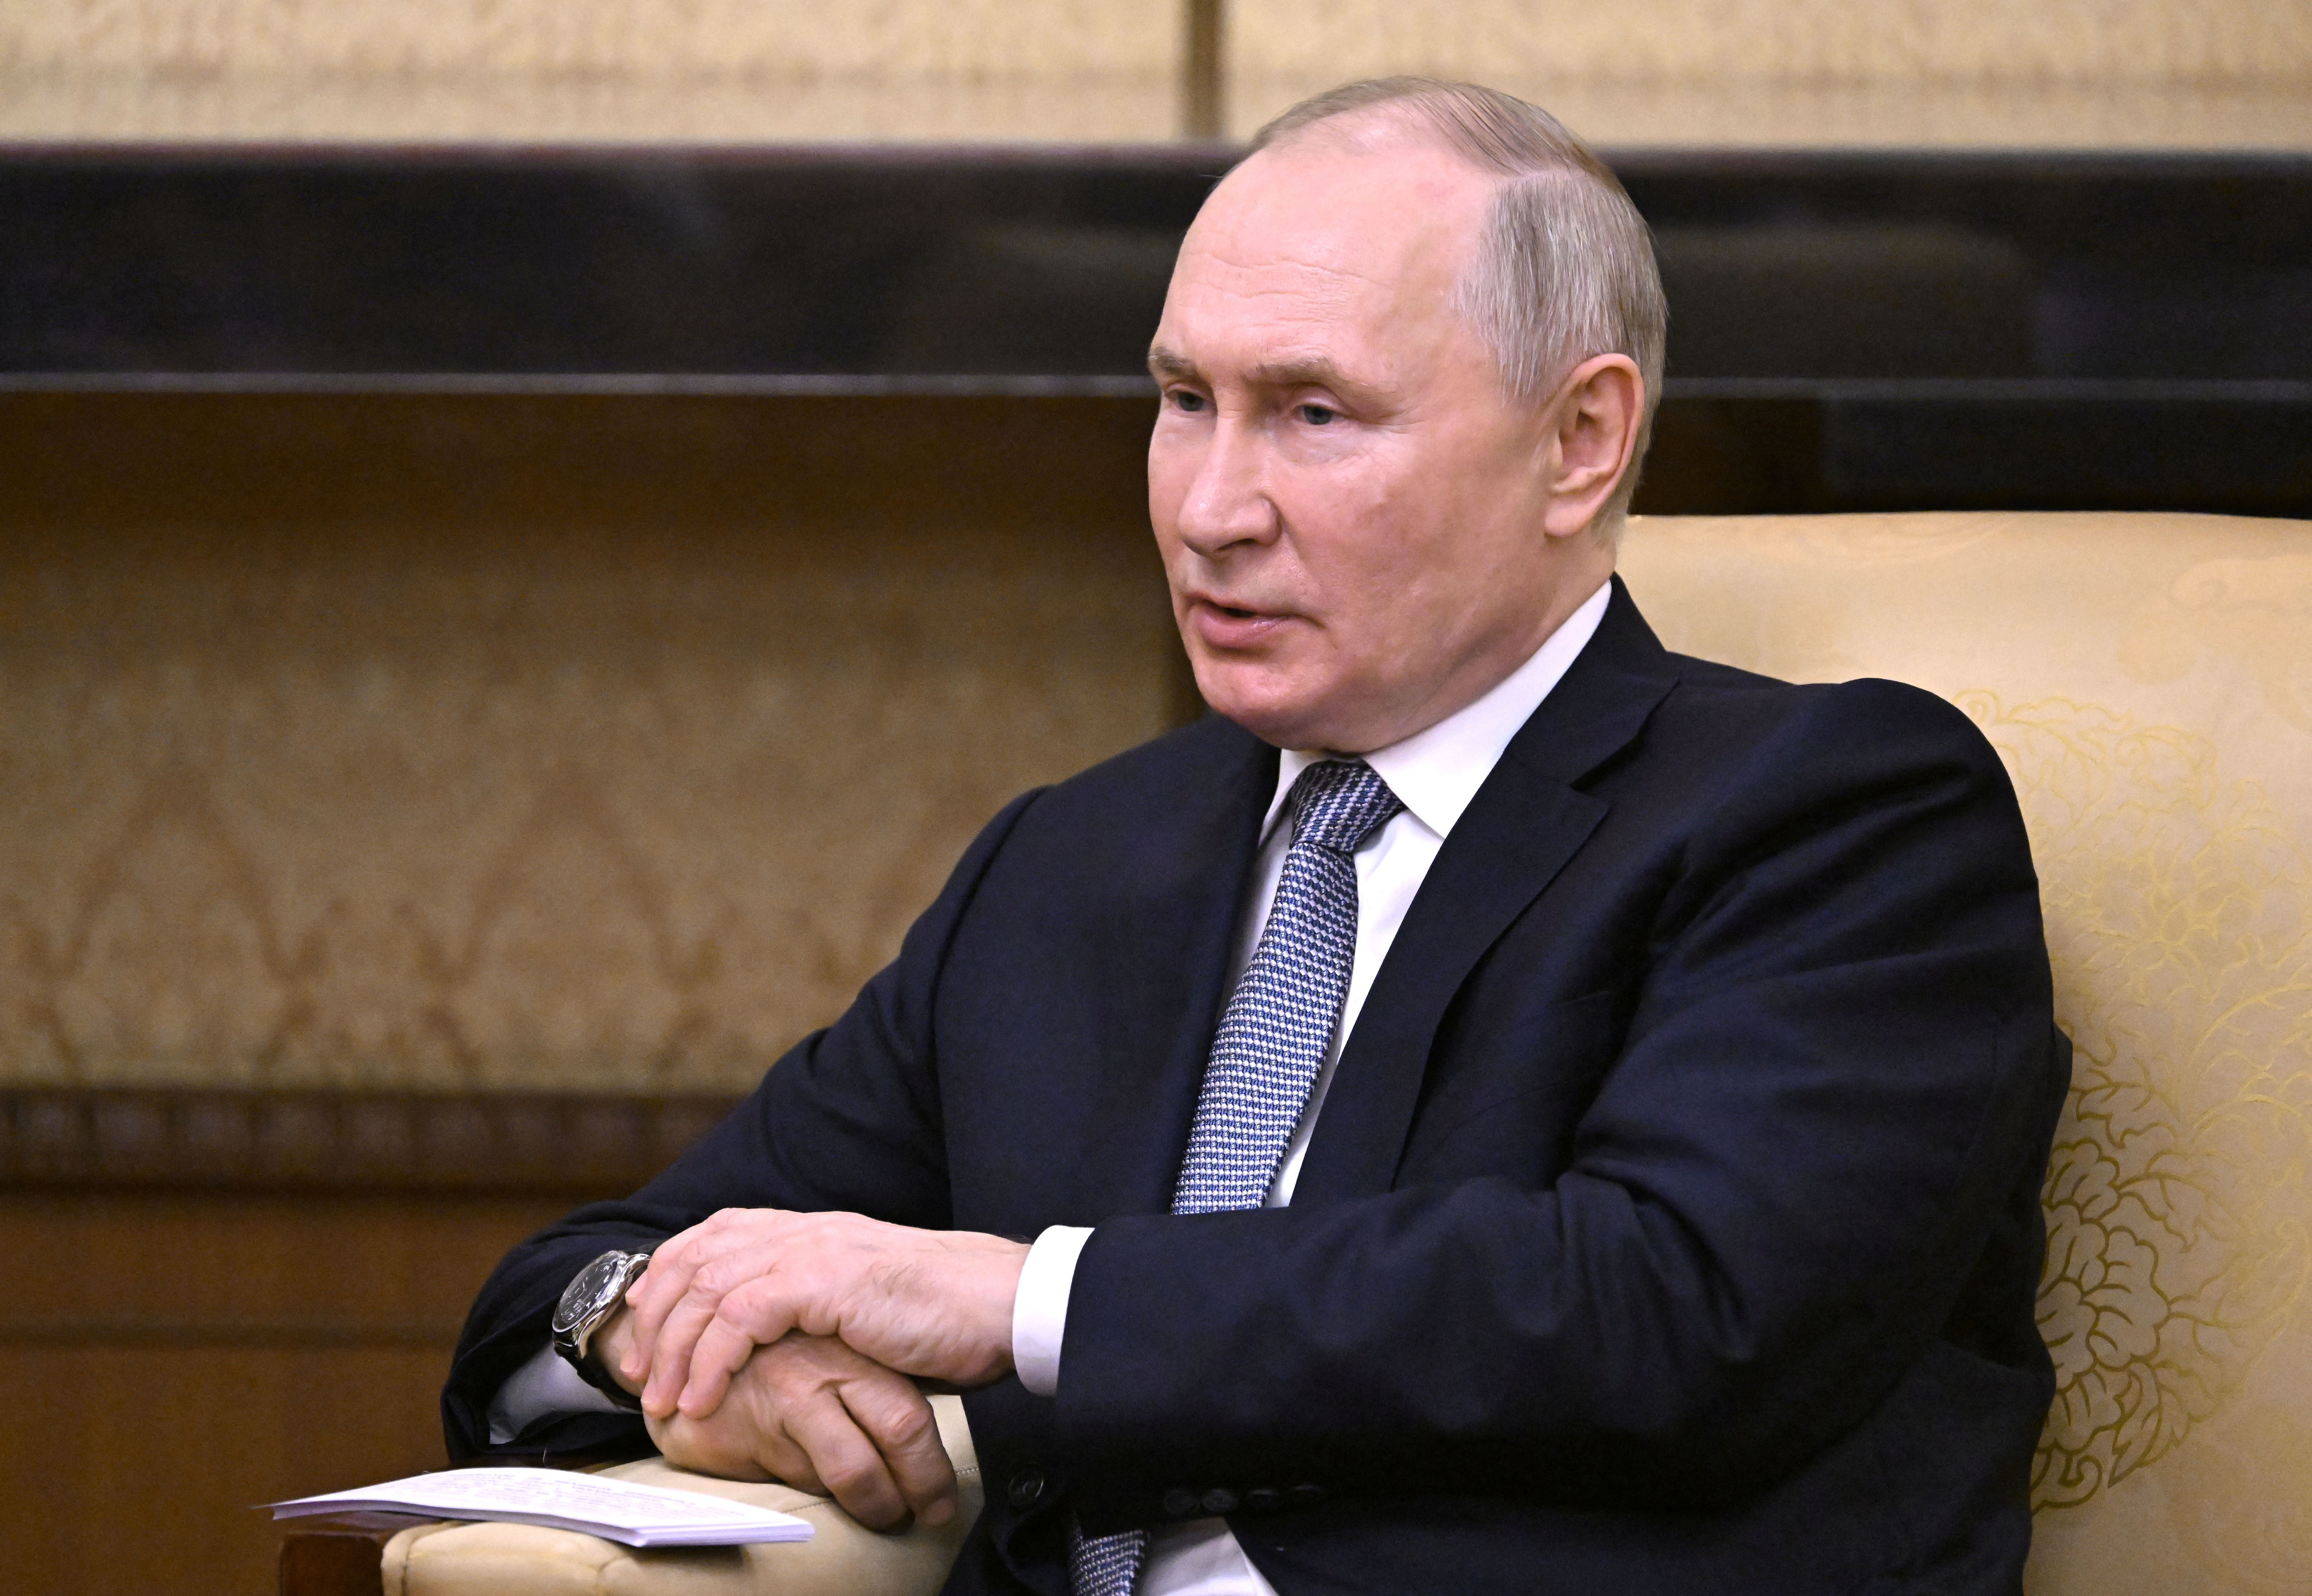 プーチン氏「ロシアは抑圧できず」、バイデン氏の発言に反論 - ロイター (Reuters Japan)